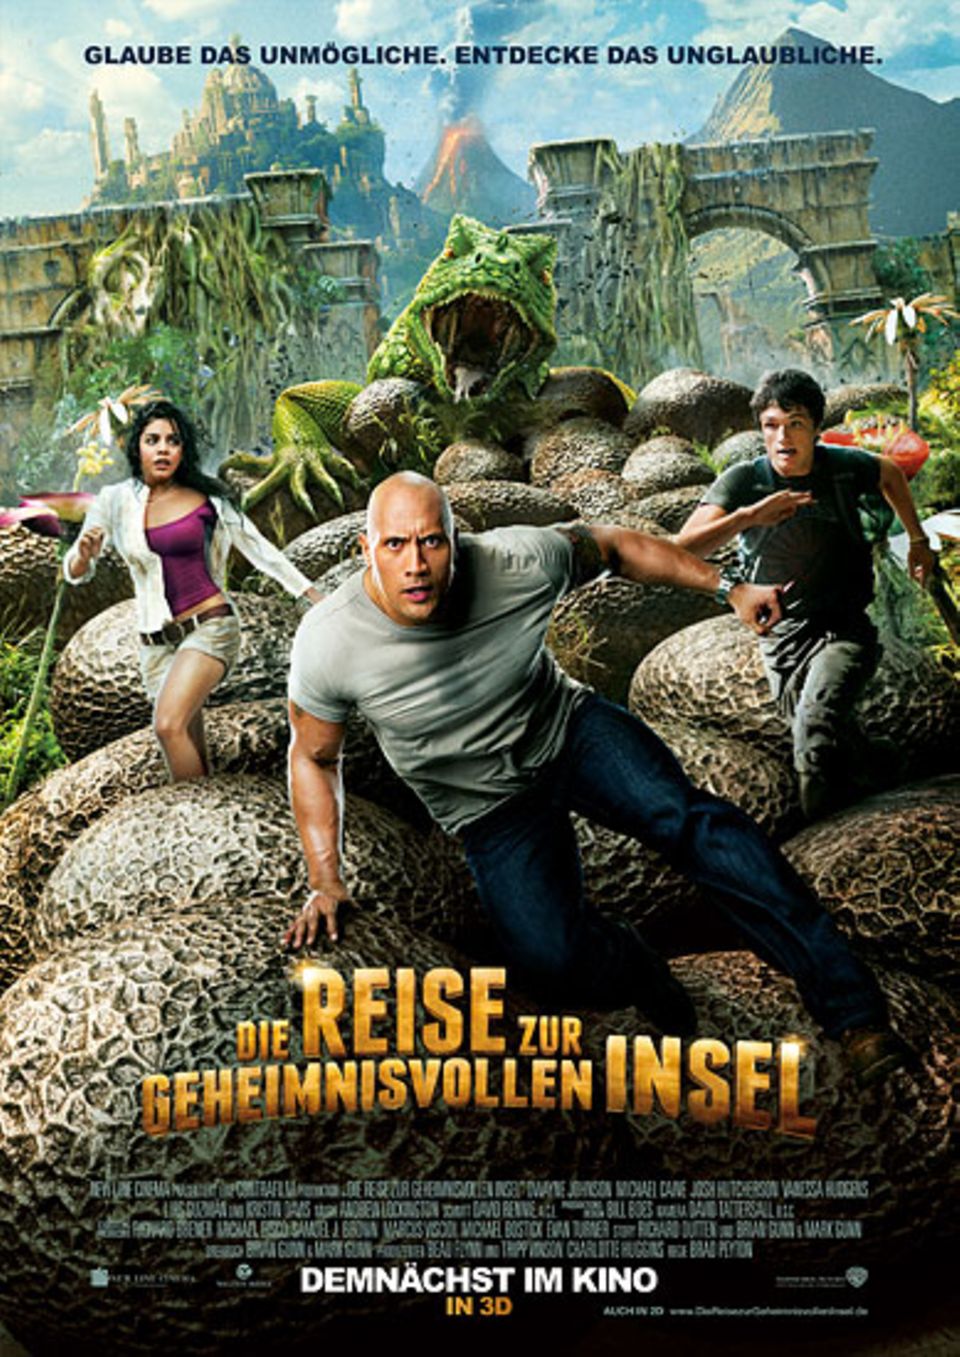 Kinotipp: "Die Reise zur geheimnisvollen Insel" läuft seit dem 1. März in deutschen Kinos